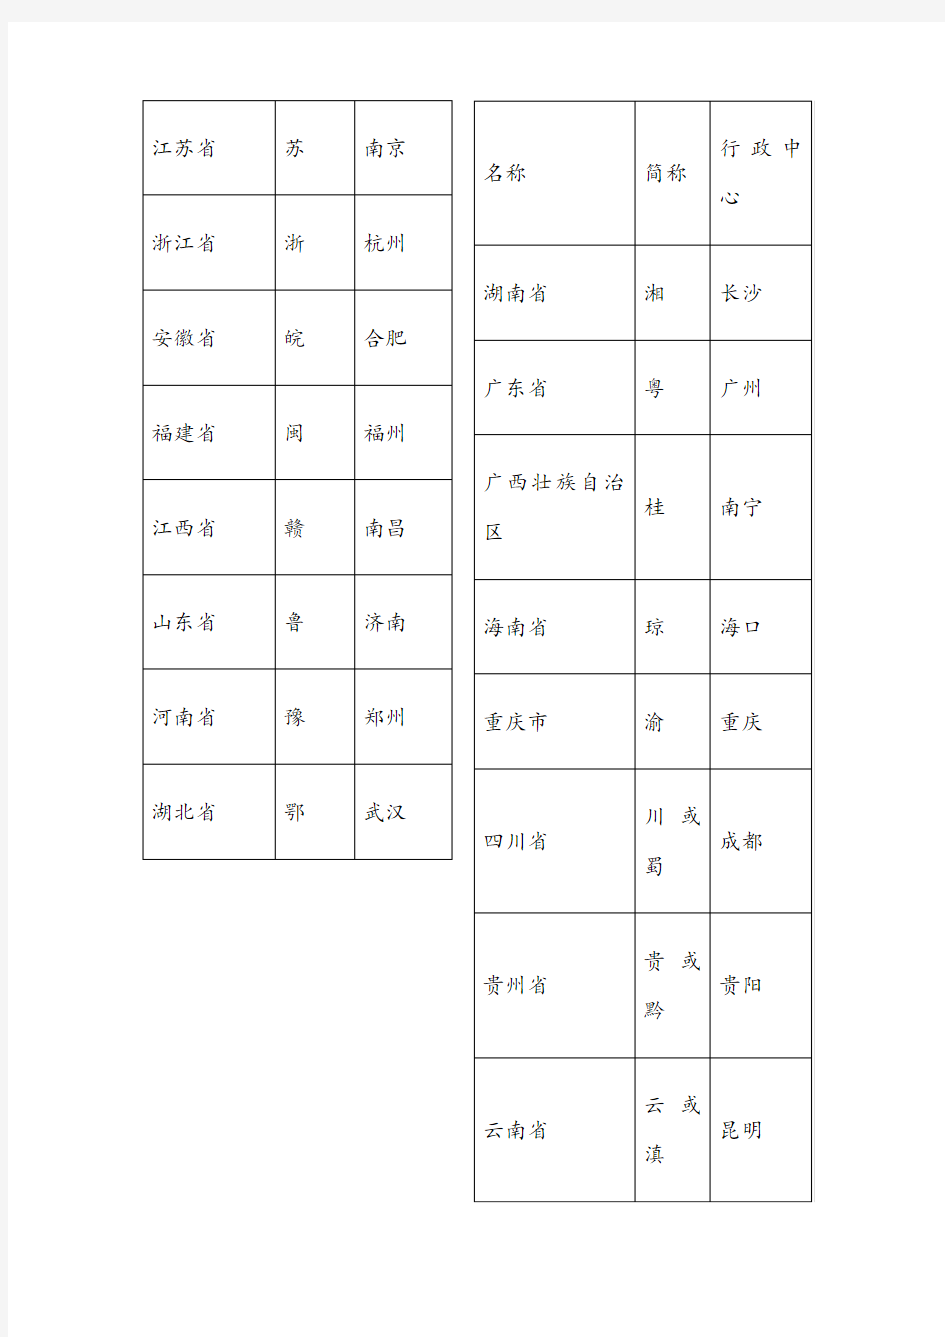 中国省级行政区划单位的名称